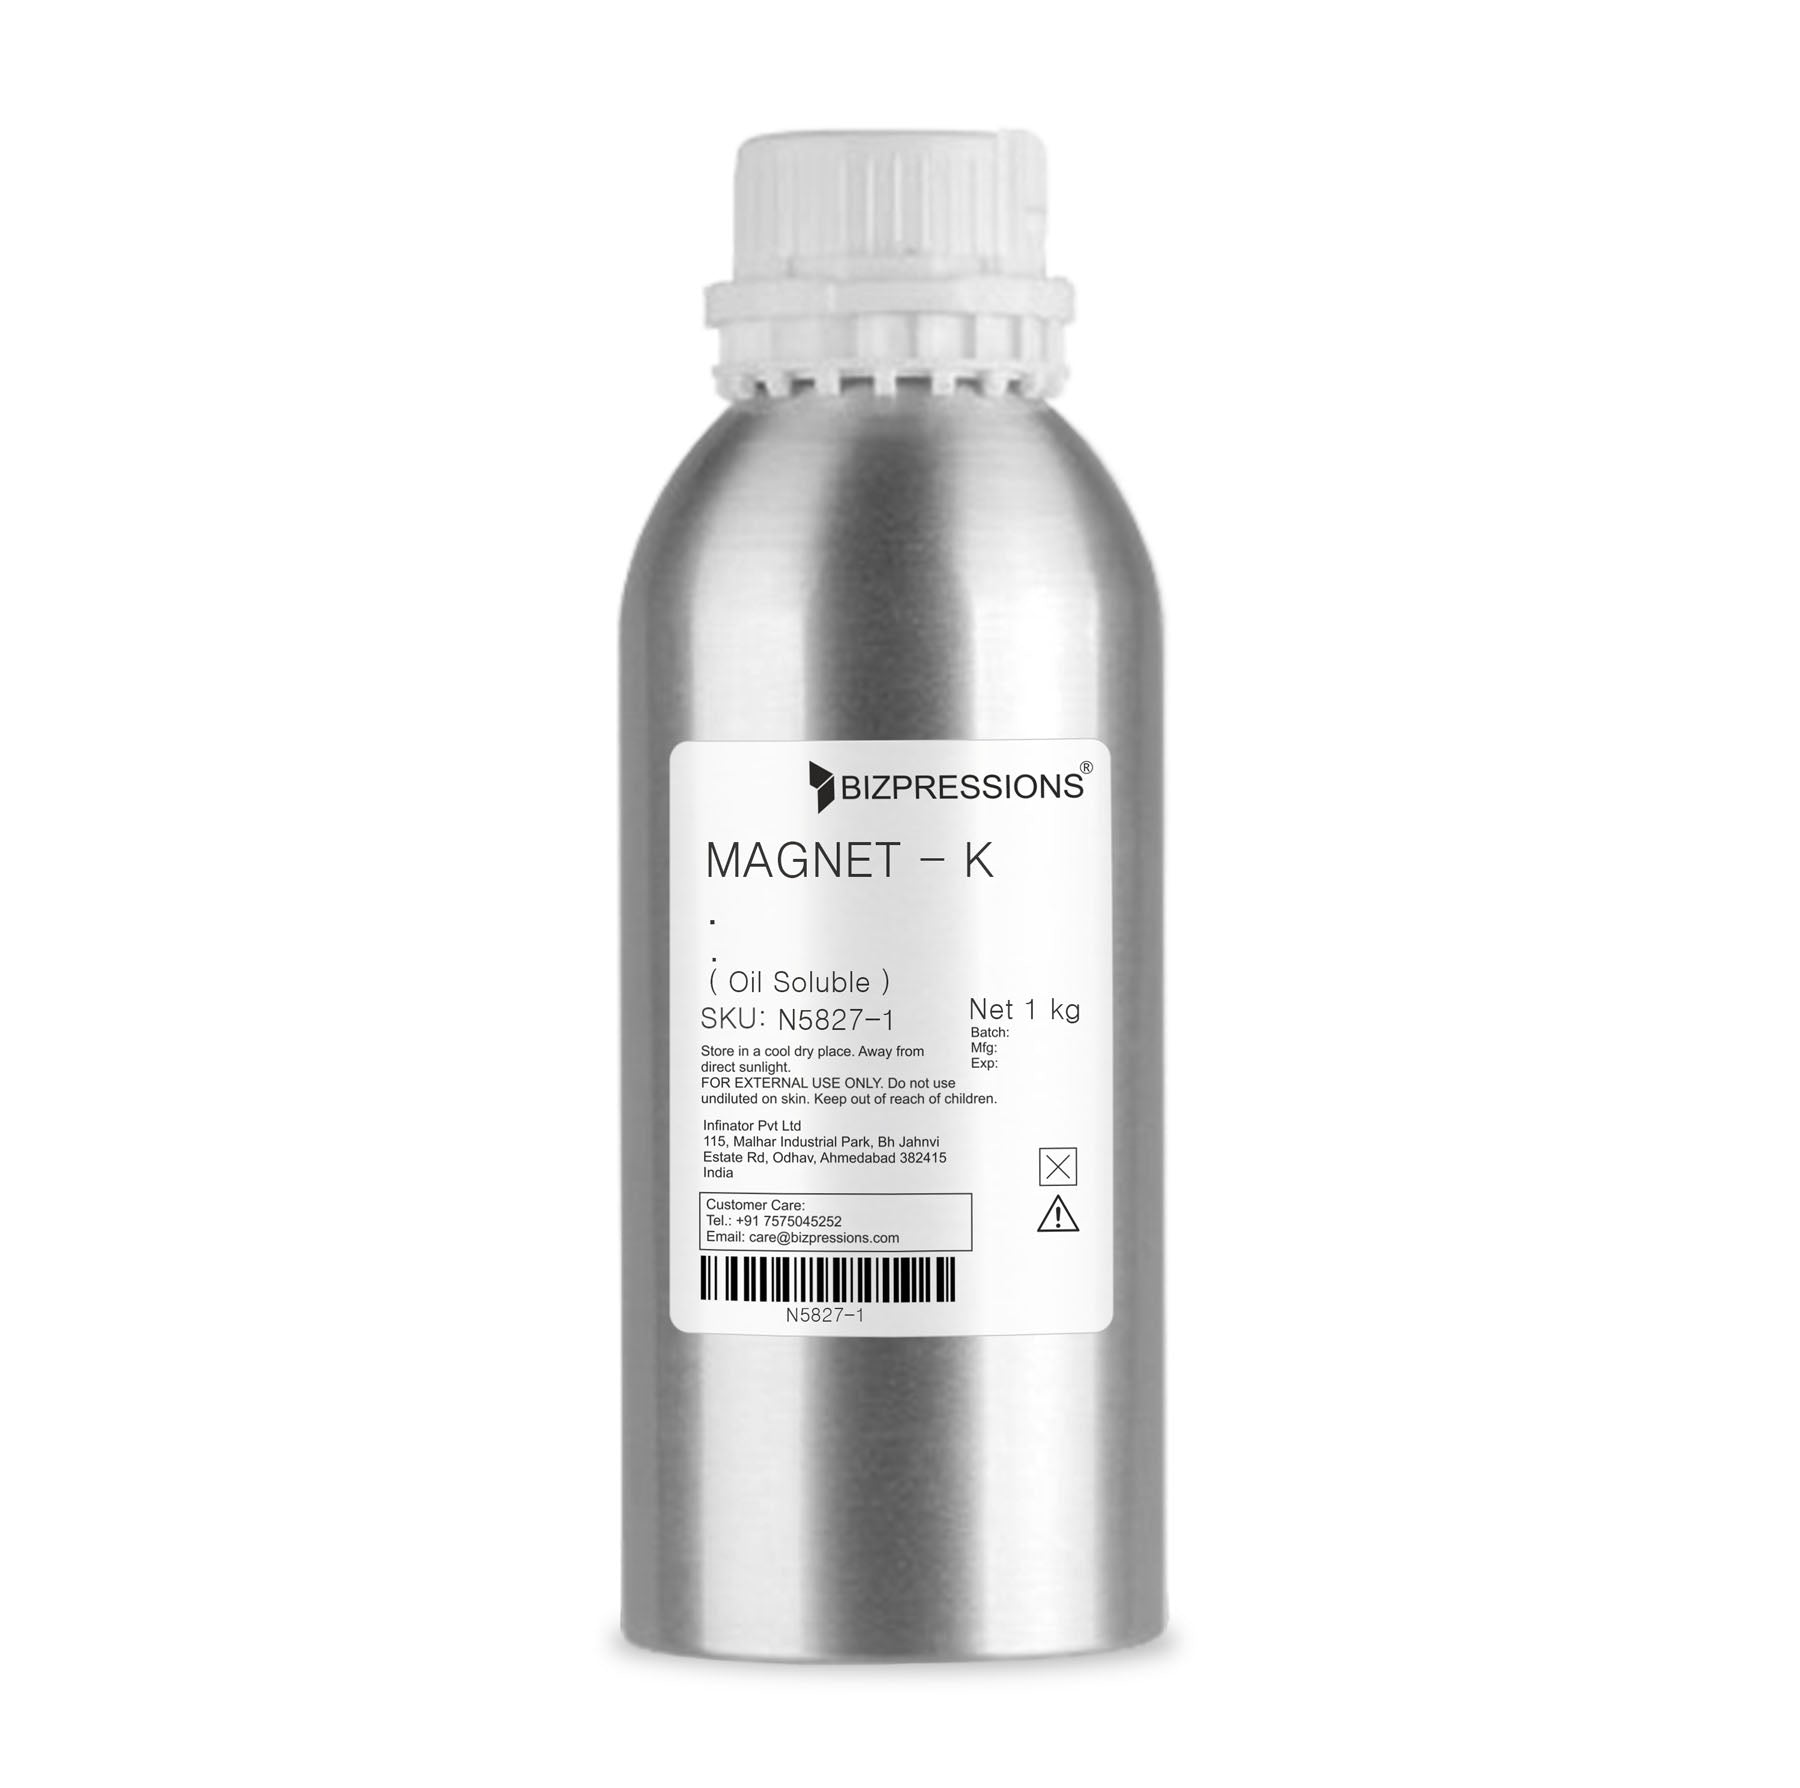 MAGNET - K - Fragrance ( Oil Soluble ) - 1 kg